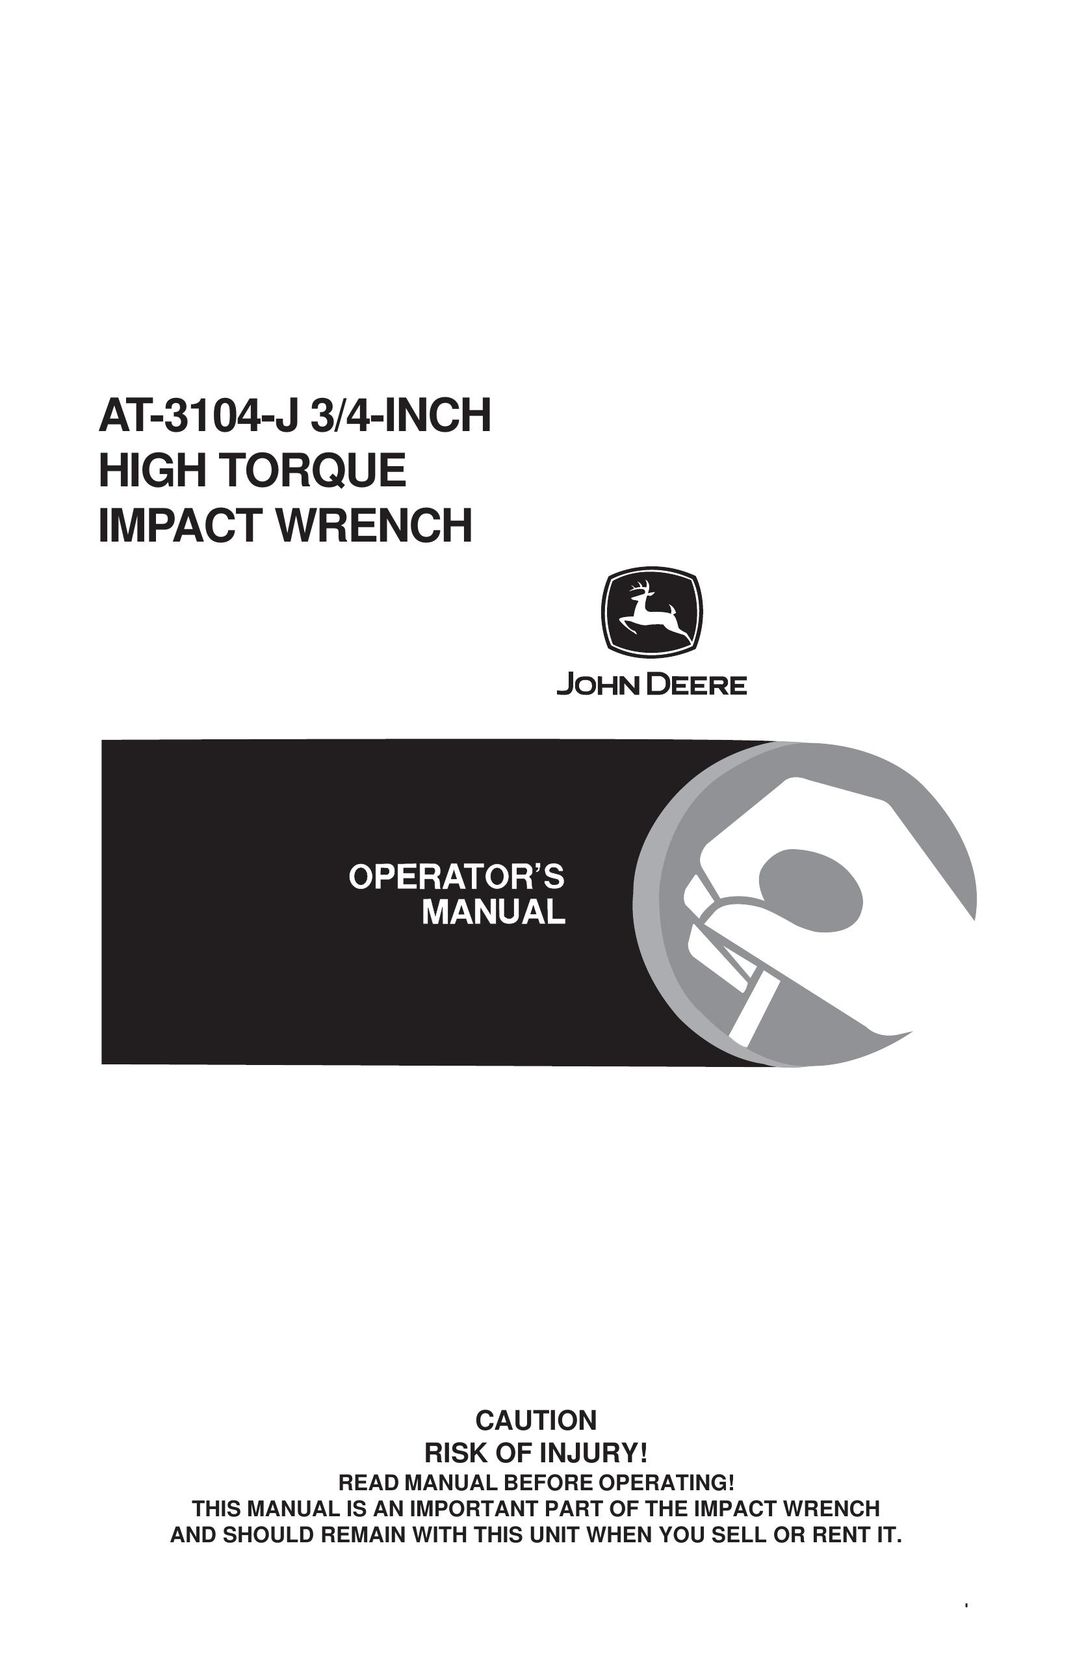 John Deere AT-3104-J Impact Driver User Manual